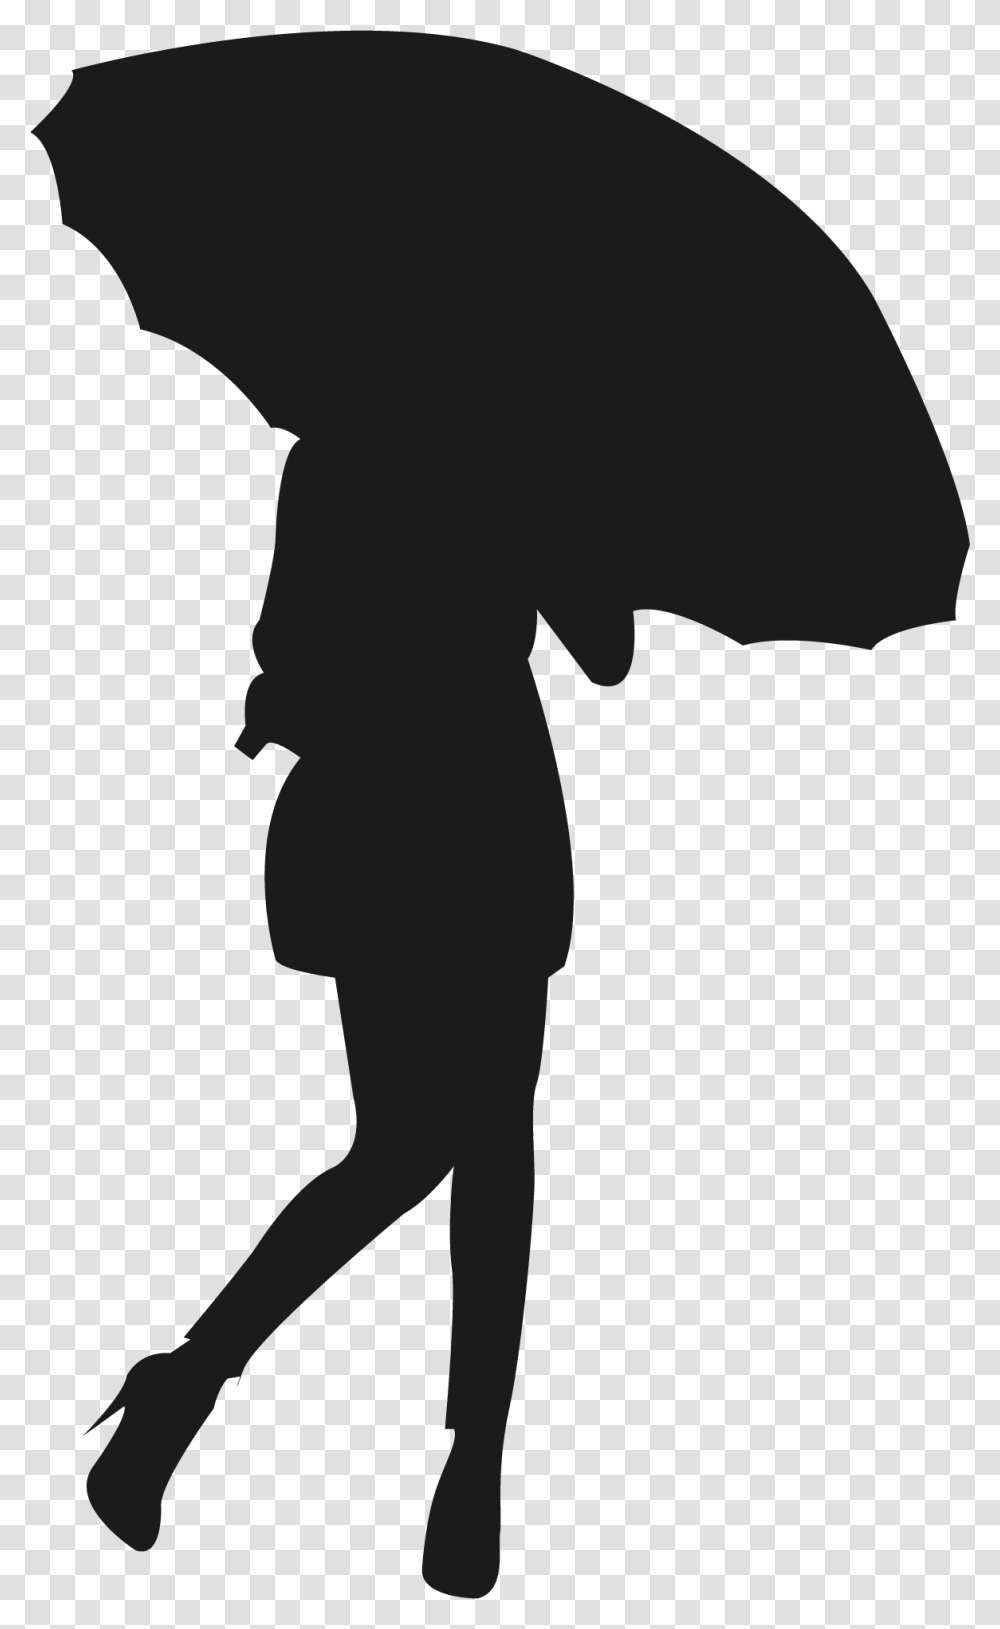 Silhouette Scalable Vector Graphics Umbrella Icon Femme Sous La Pluie Silhouette, Person, Human, Stencil Transparent Png